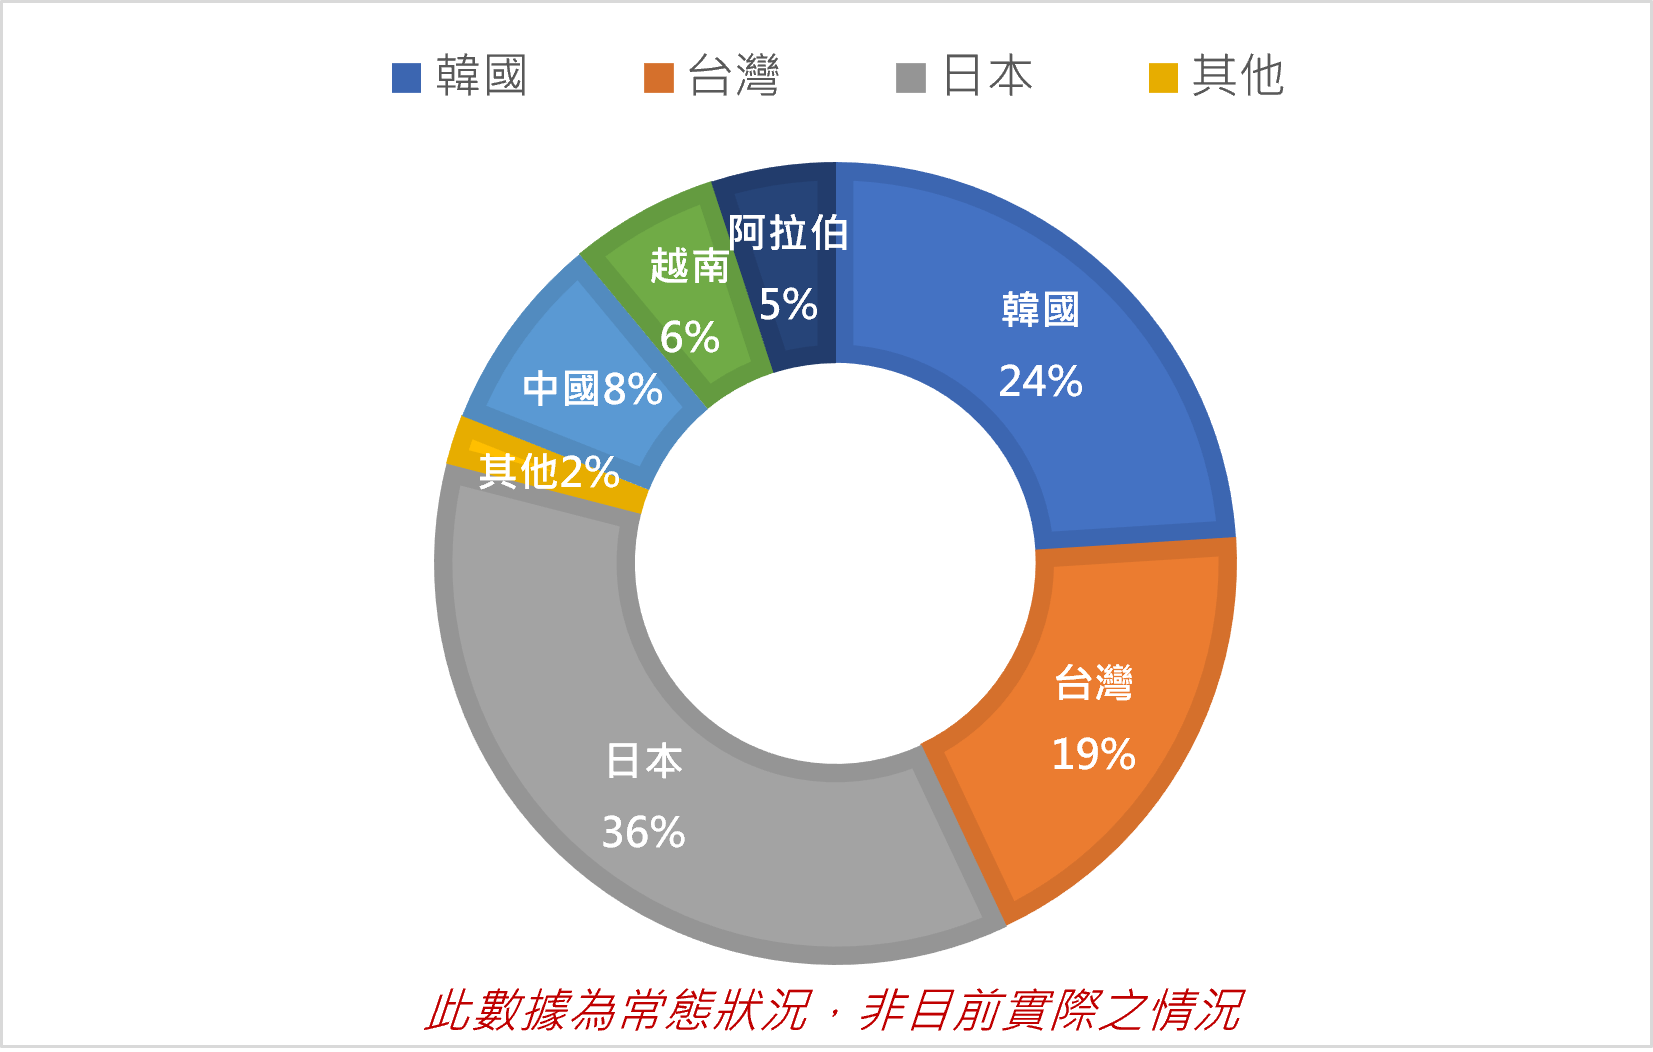 CIA校內學生國籍比例為:韓國24%,台灣19%,日本36%,其它國家21%，但此數據統計為常態狀況，非目前實際之數據